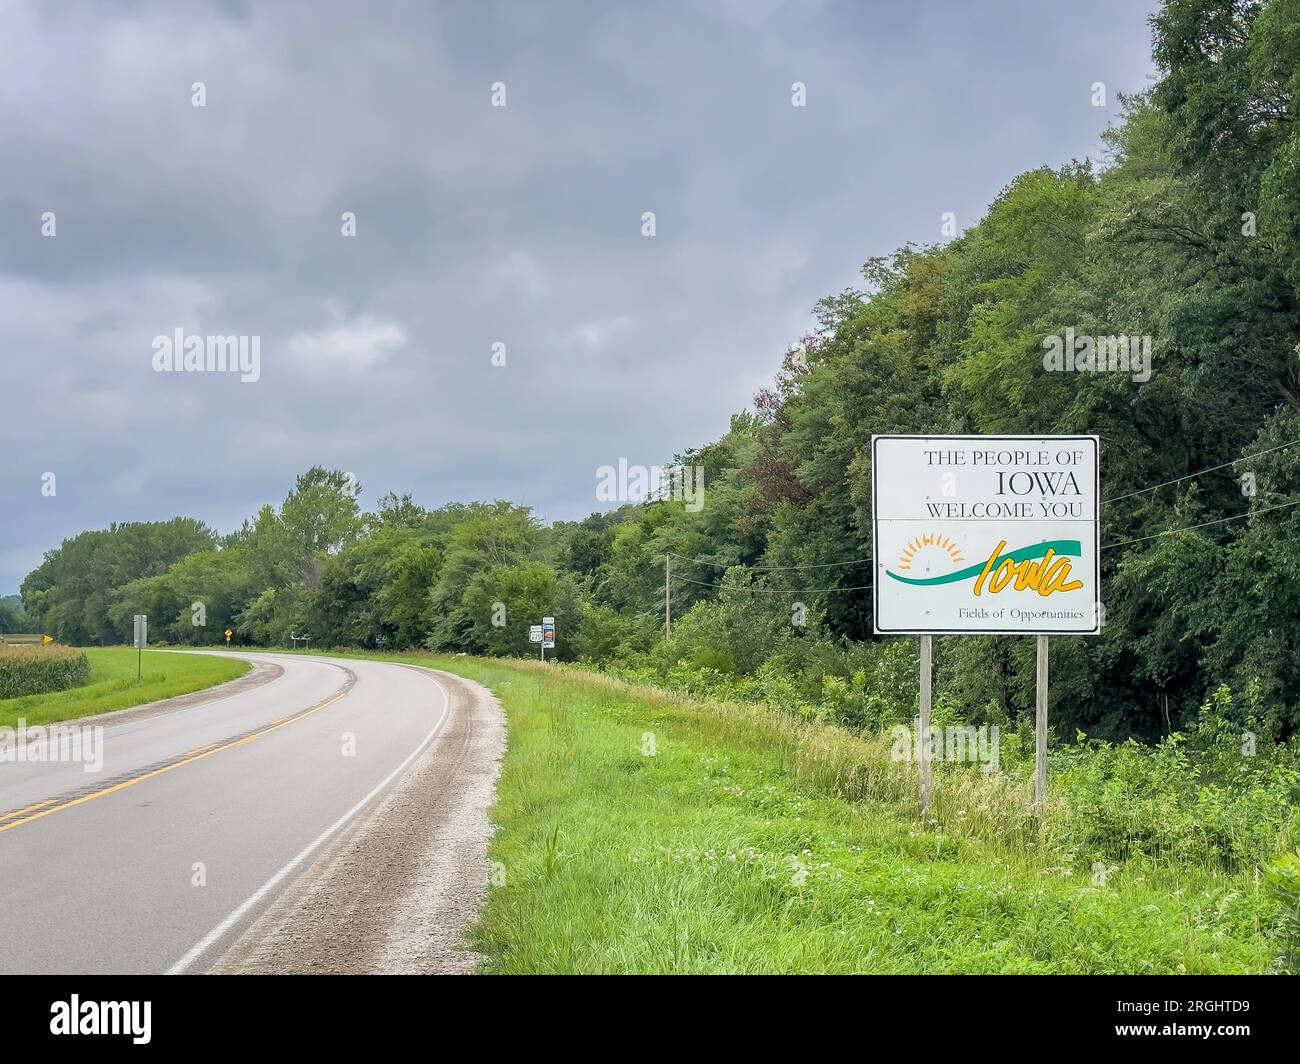 Iowa Willkommensschild an der Staatsgrenze zu Nebraska, Sommerlandschaft, Reisekonzept Stockfoto